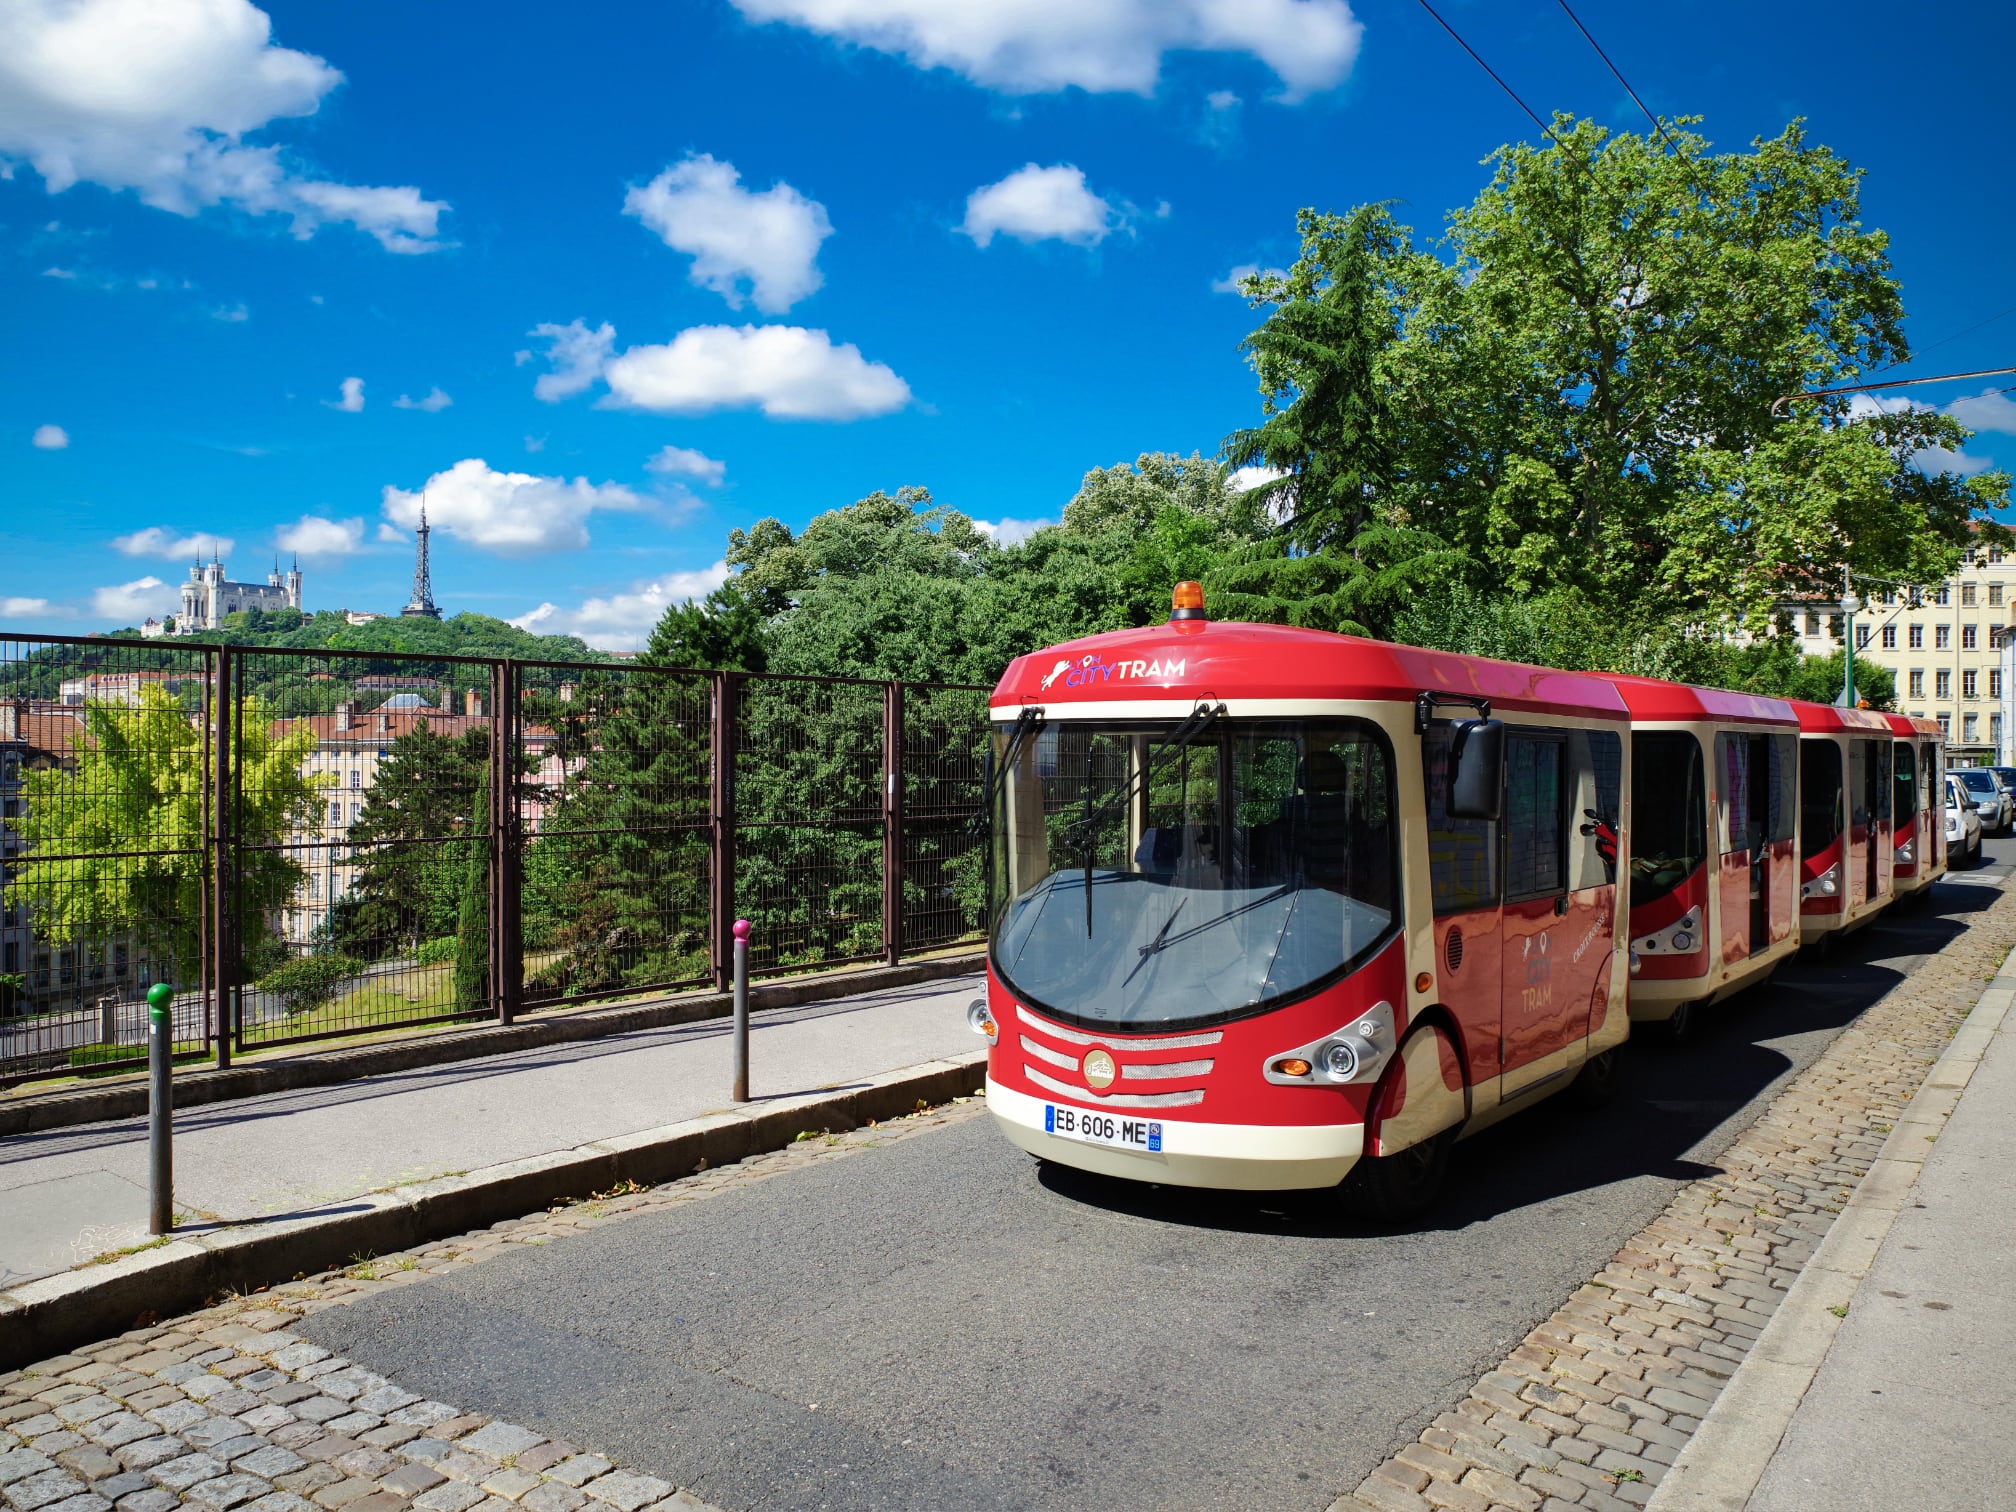 lyon city tram tour